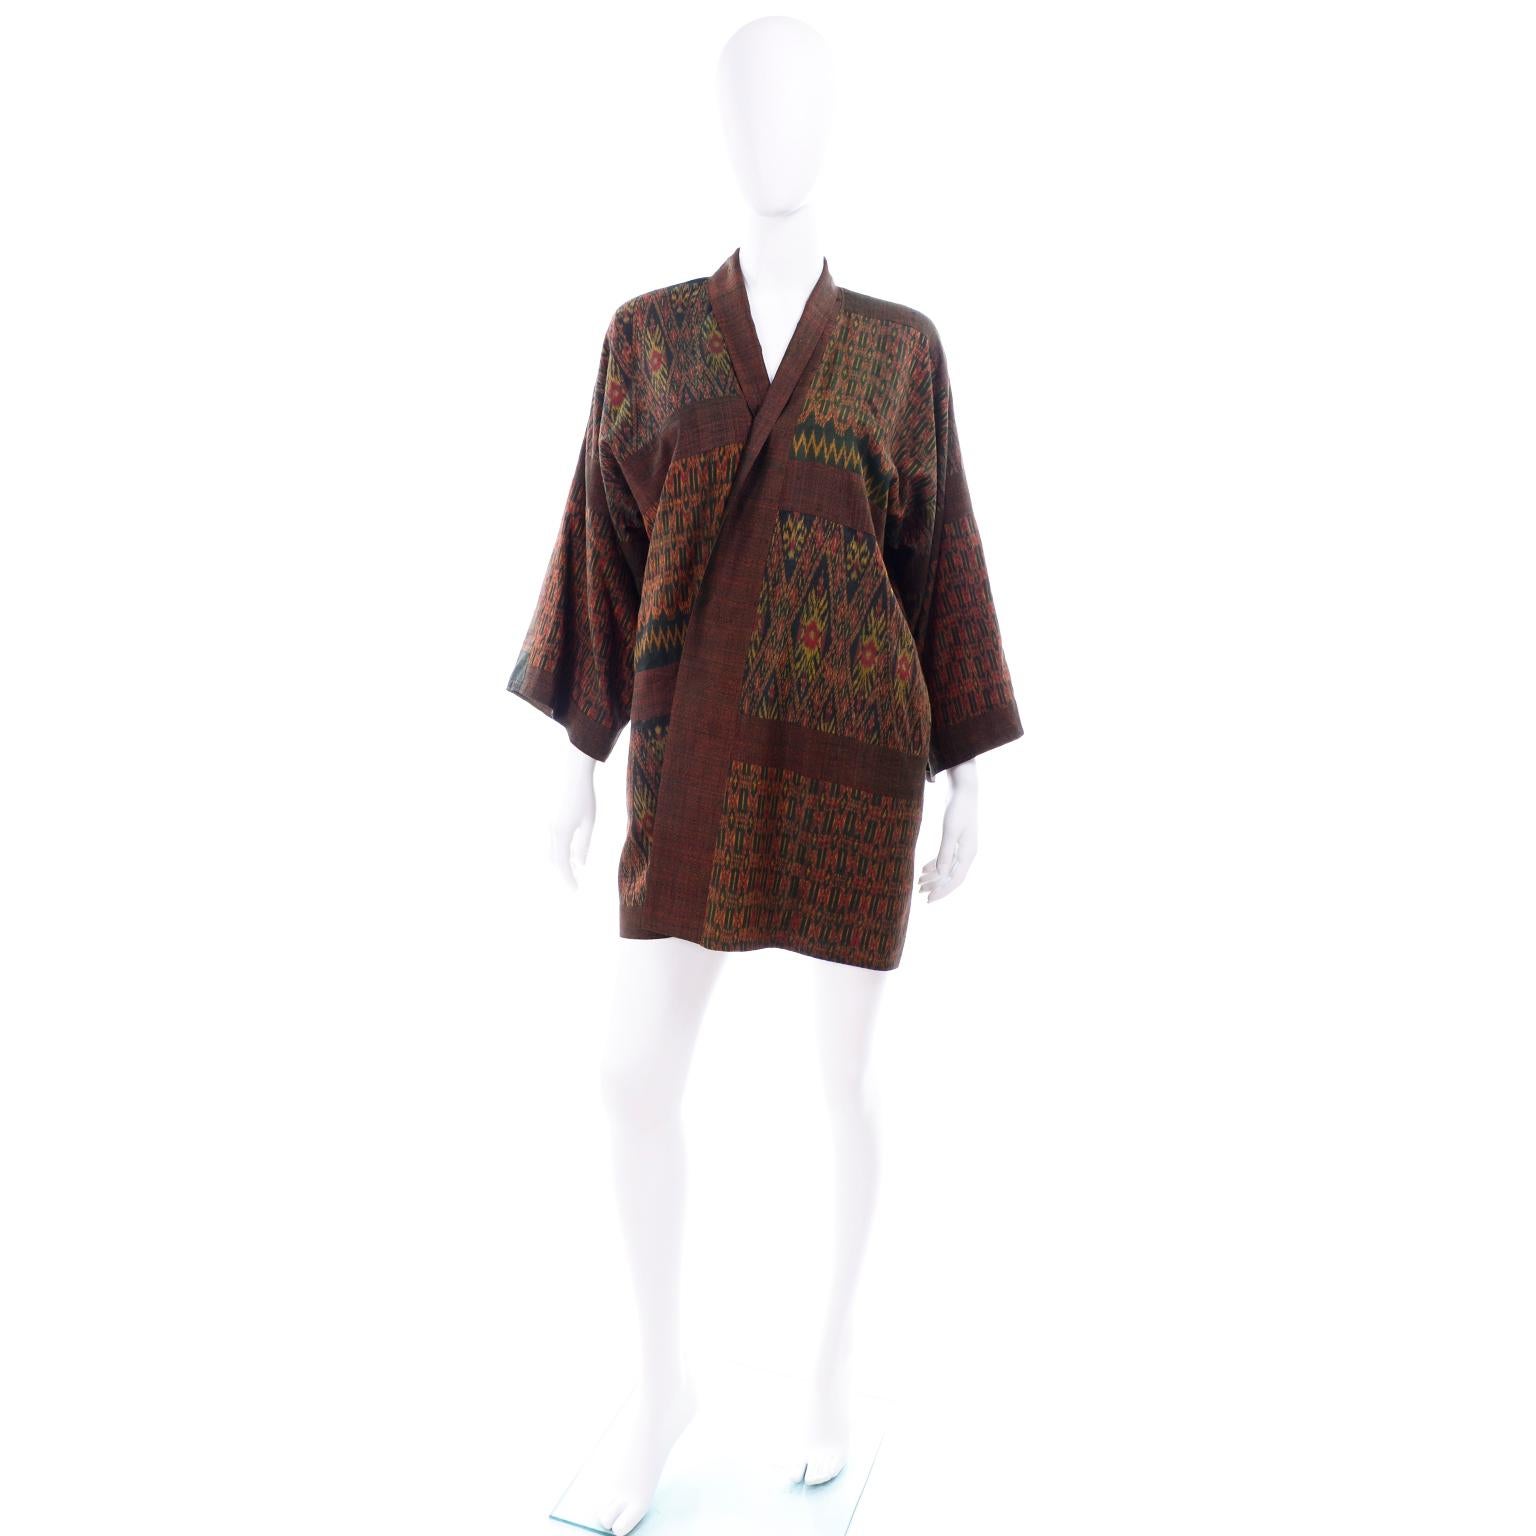 Diese Vintage-Seidenkimonojacke ist in kräftigen Herbsttönen wie Rot, Rost, Grün und Gold gehalten. Der Kimono hat gemischte Muster im Ikat-Stil und ist gefüttert  in braun. Auf der linken Brustseite befindet sich eine Innentasche und außen sind 2